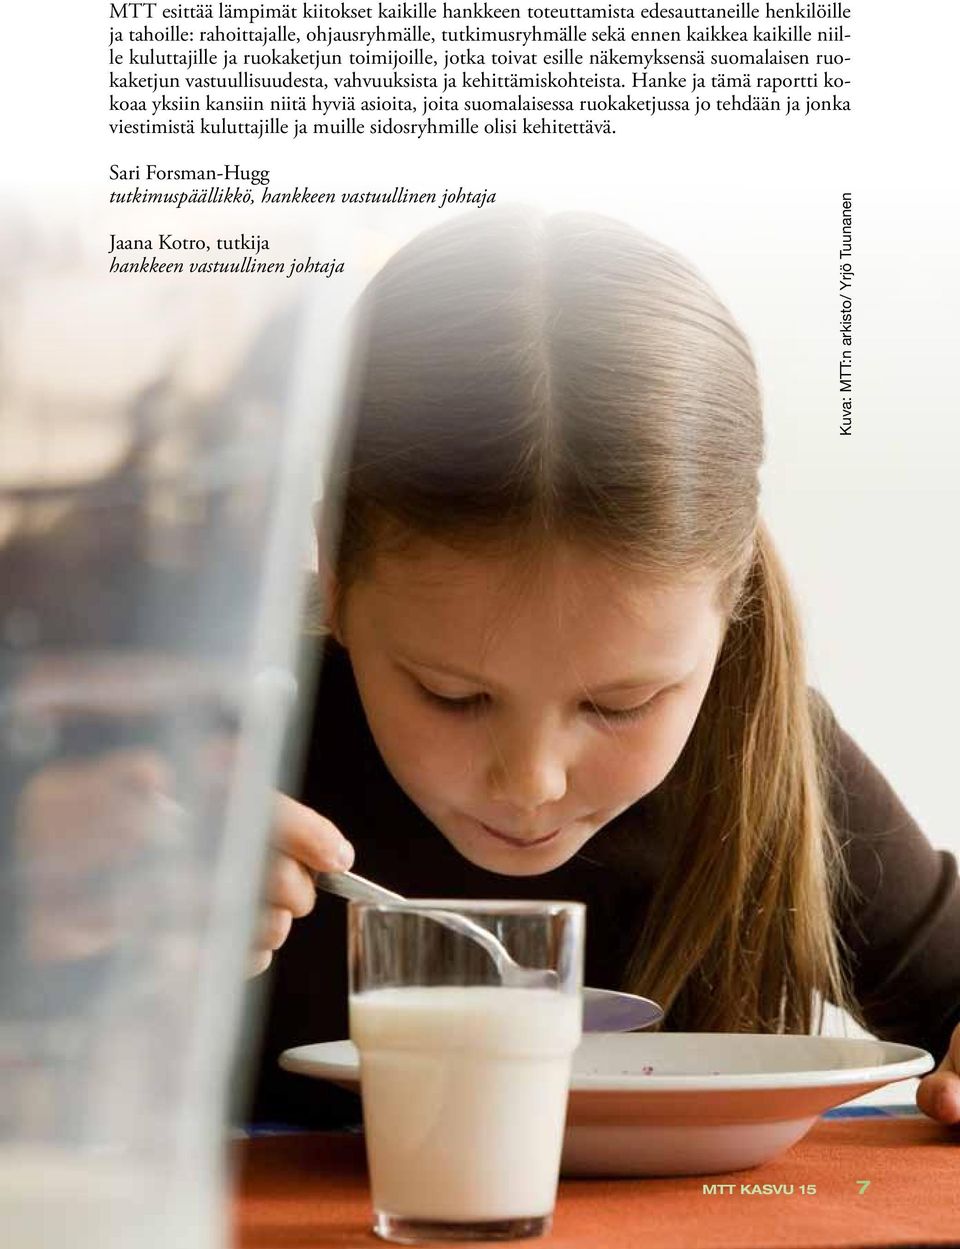 Hanke ja tämä raportti kokoaa yksiin kansiin niitä hyviä asioita, joita suomalaisessa ruokaketjussa jo tehdään ja jonka viestimistä kuluttajille ja muille sidosryhmille